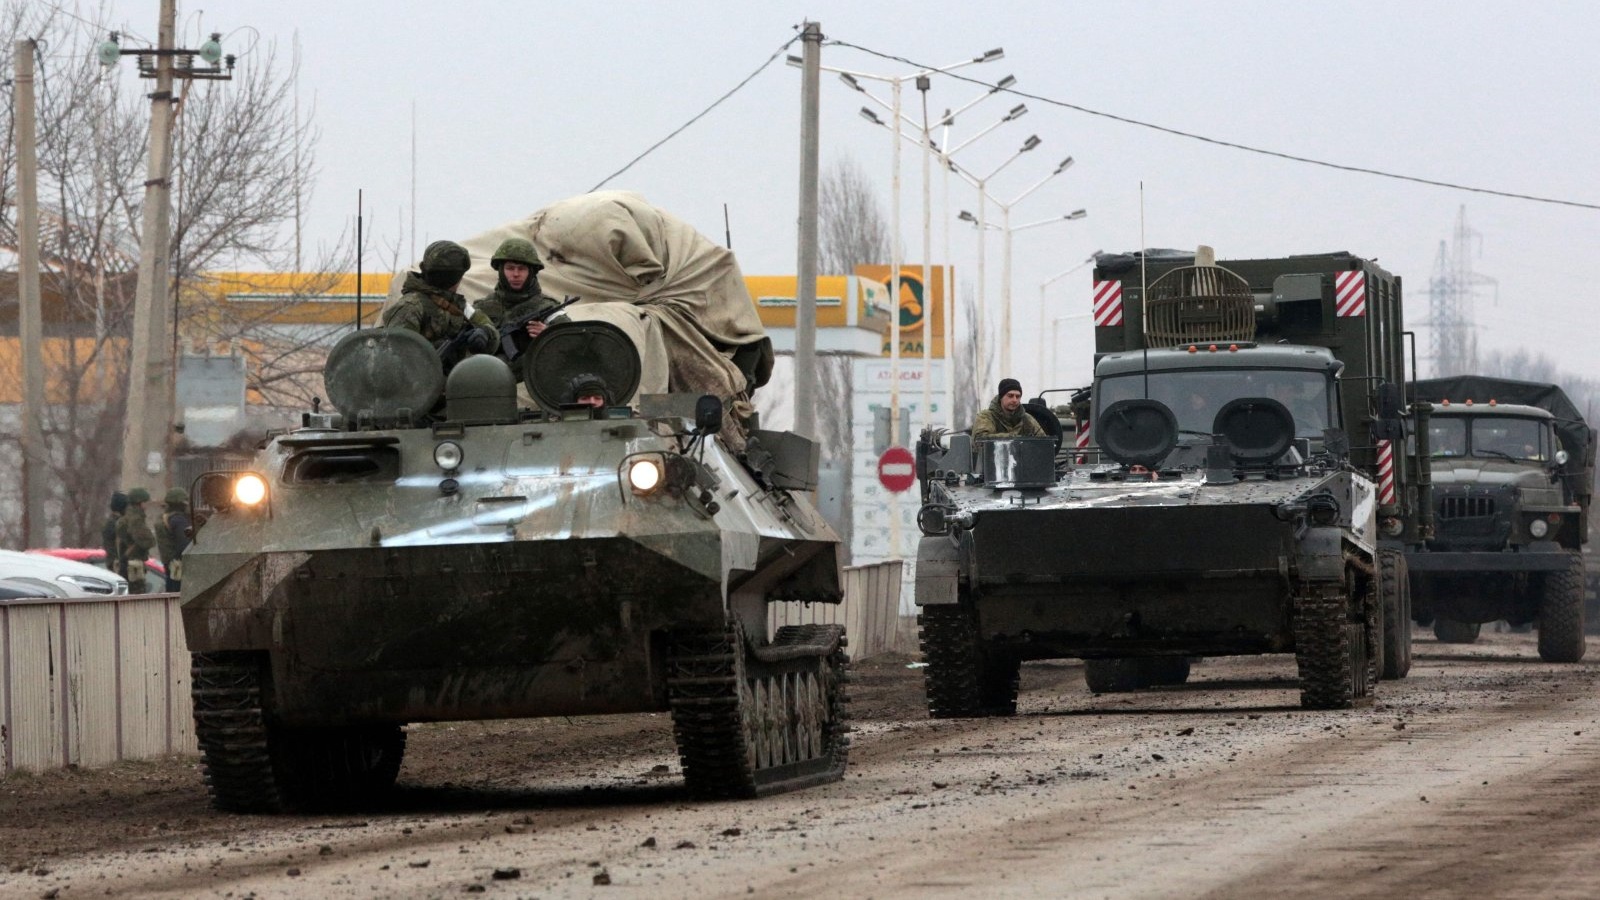 مركبات عسكرية للجيش الروسي في آرميانسك، القرم، أوكرانيا. 25 فبراير 2022.